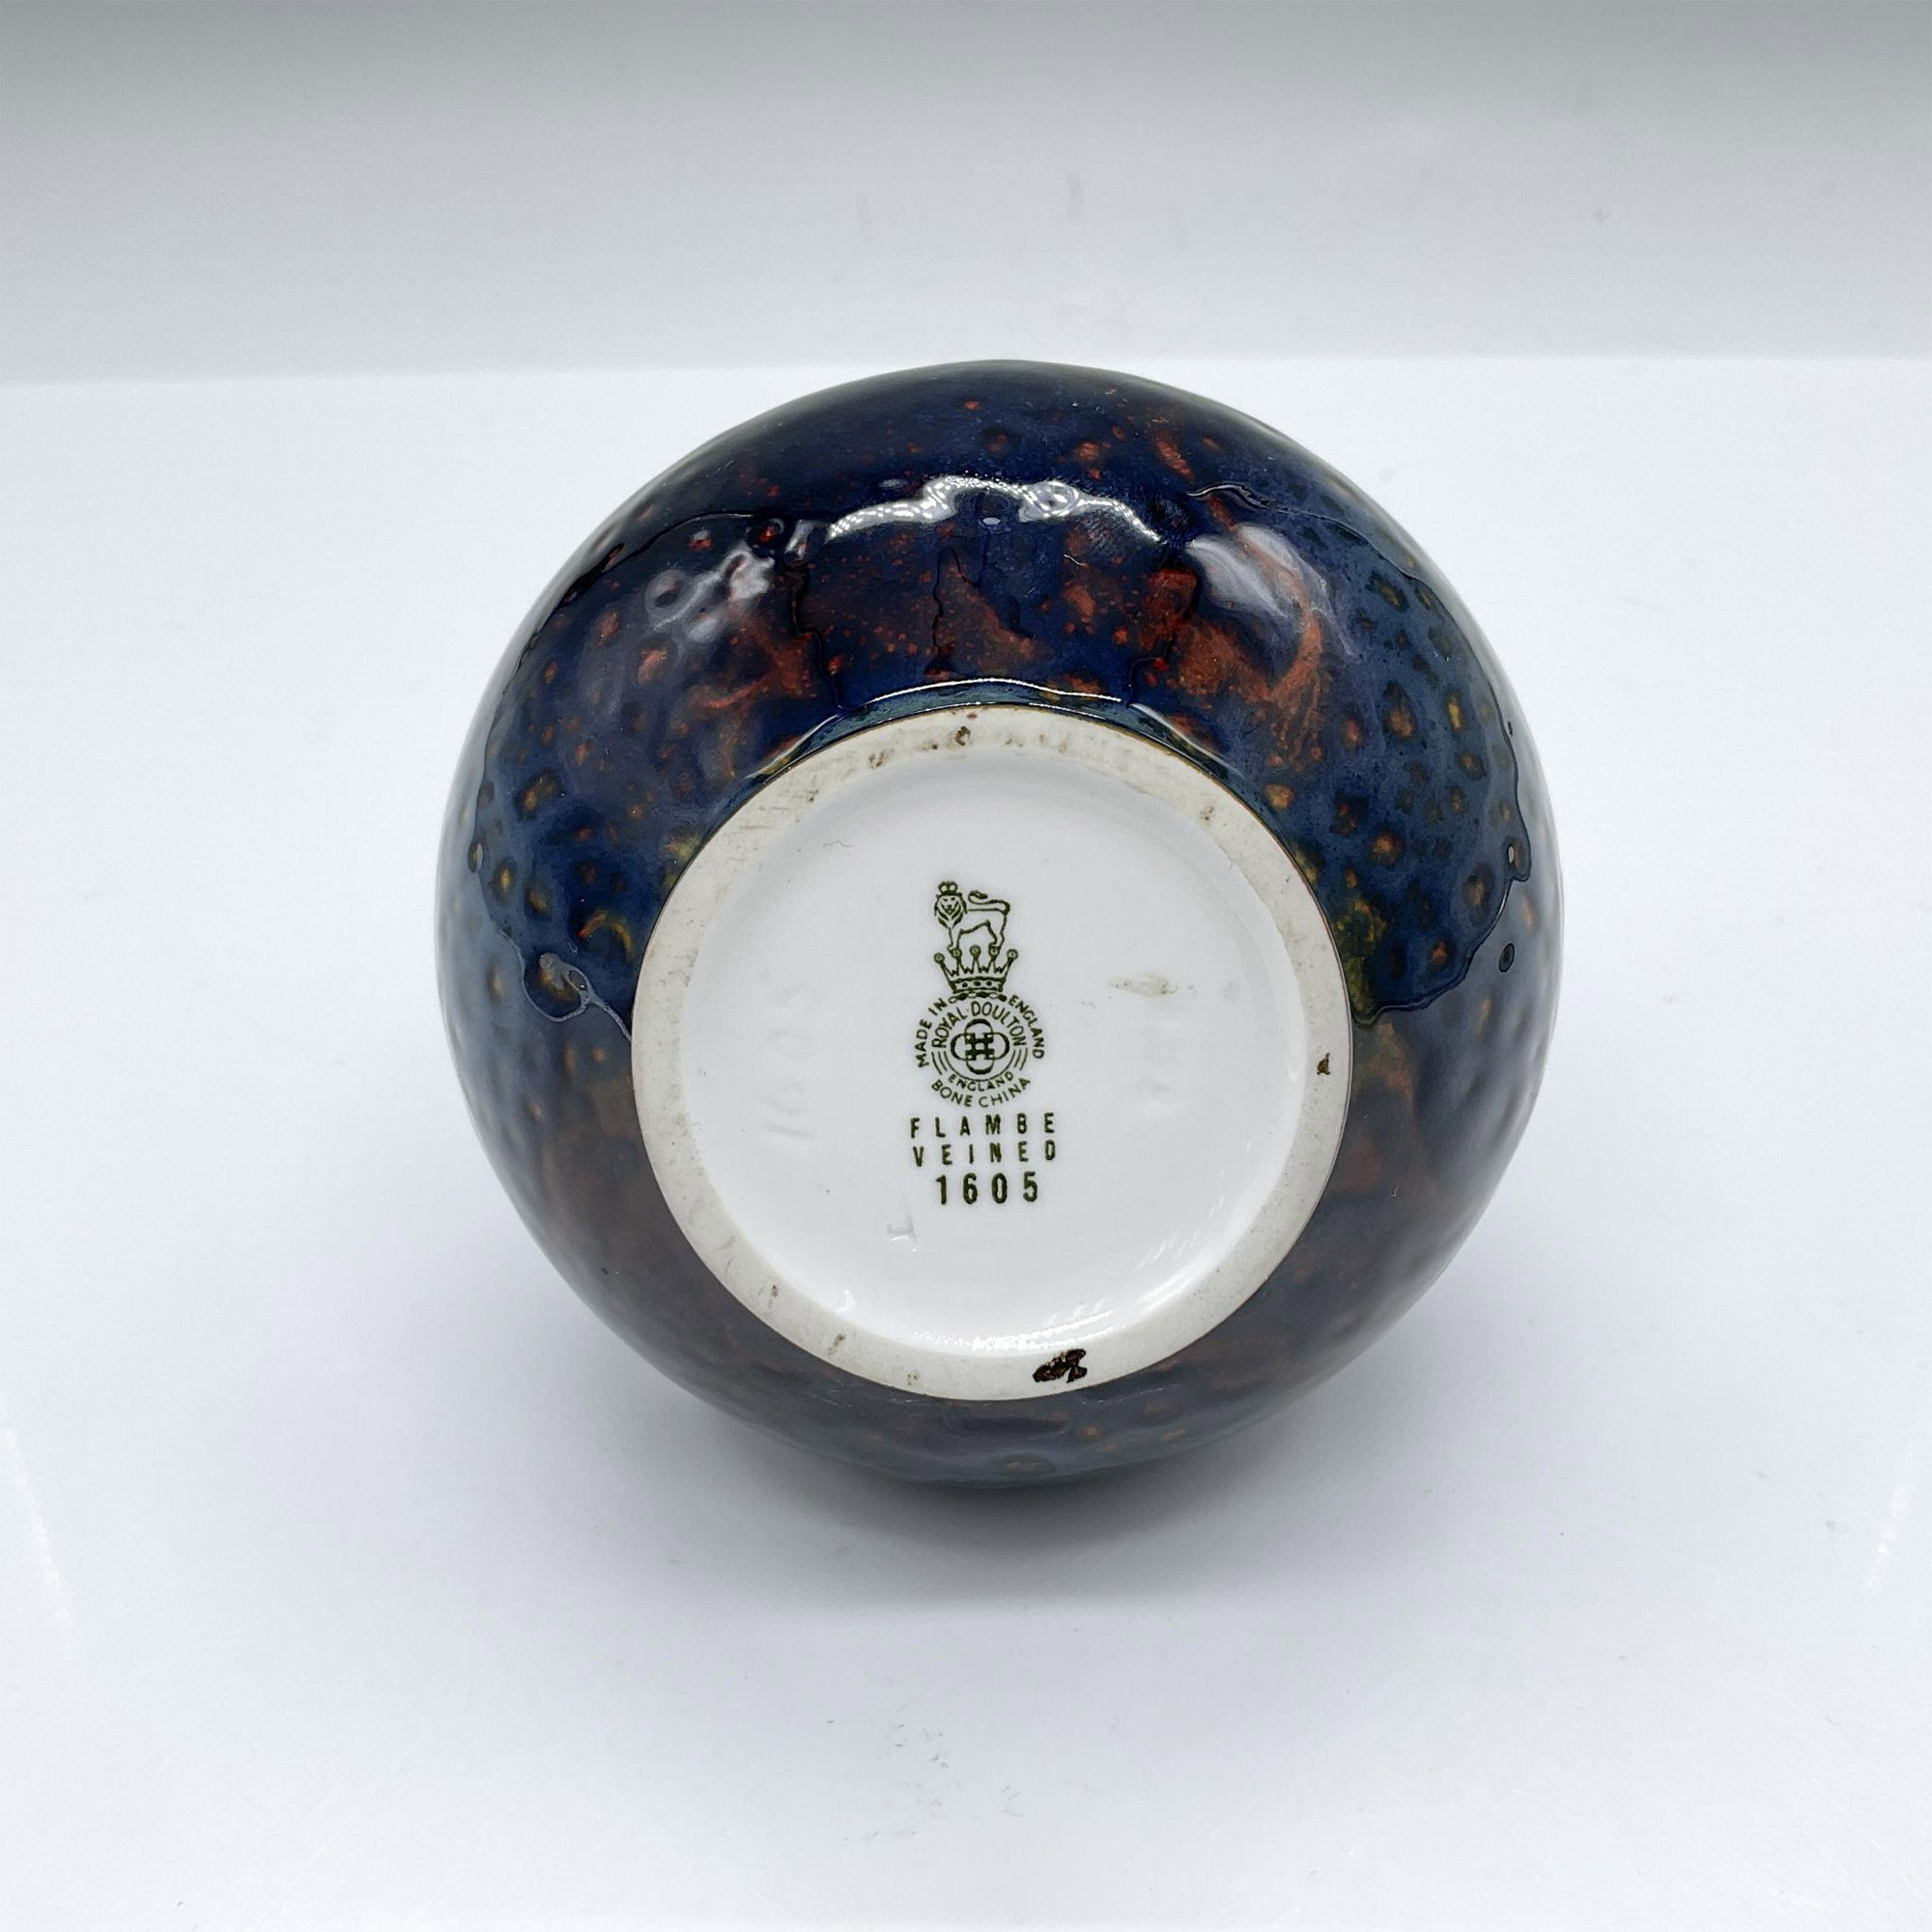 Royal Doulton Bone China Flambe Veined Vase, 1605 - Image 3 of 3